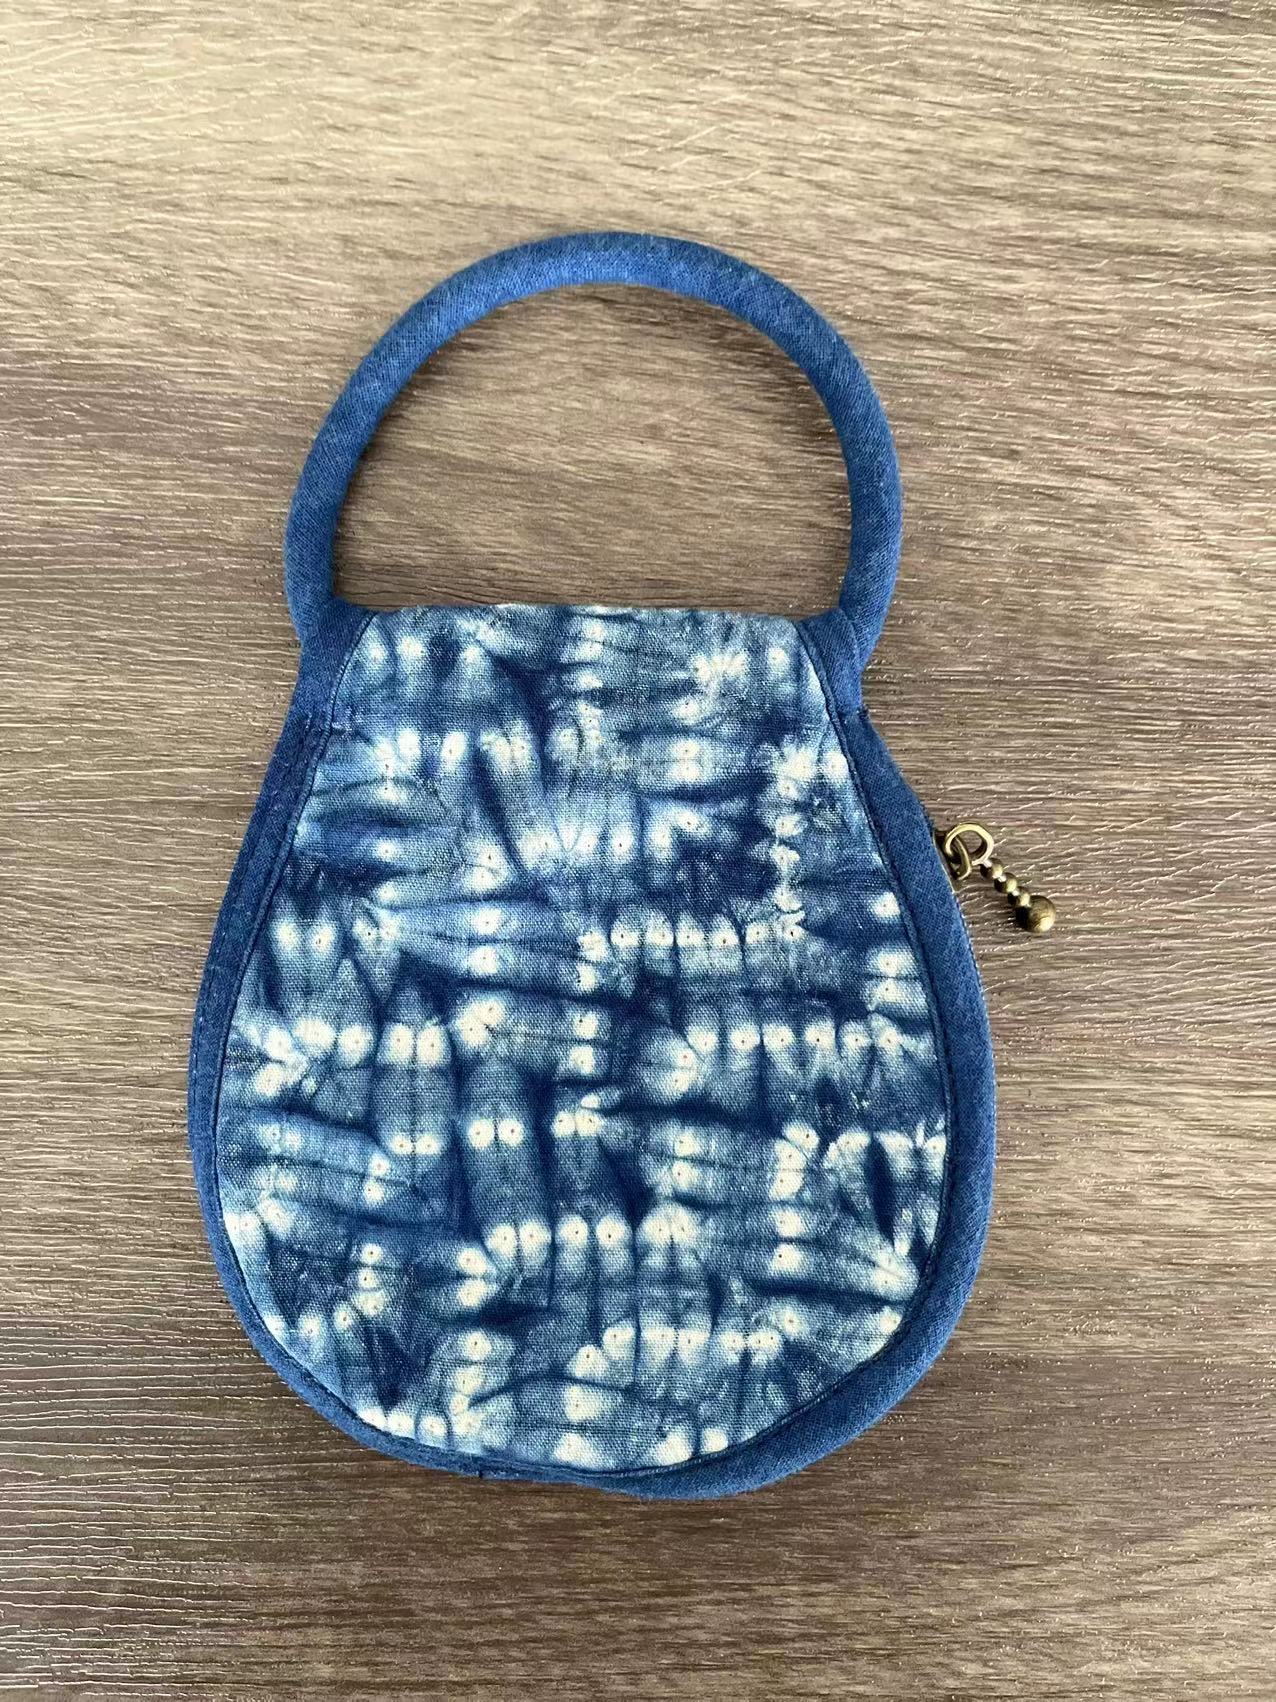 Floral tie dye zipper key pouch, tote bag-shape indigo dye key cozy holder, key chain